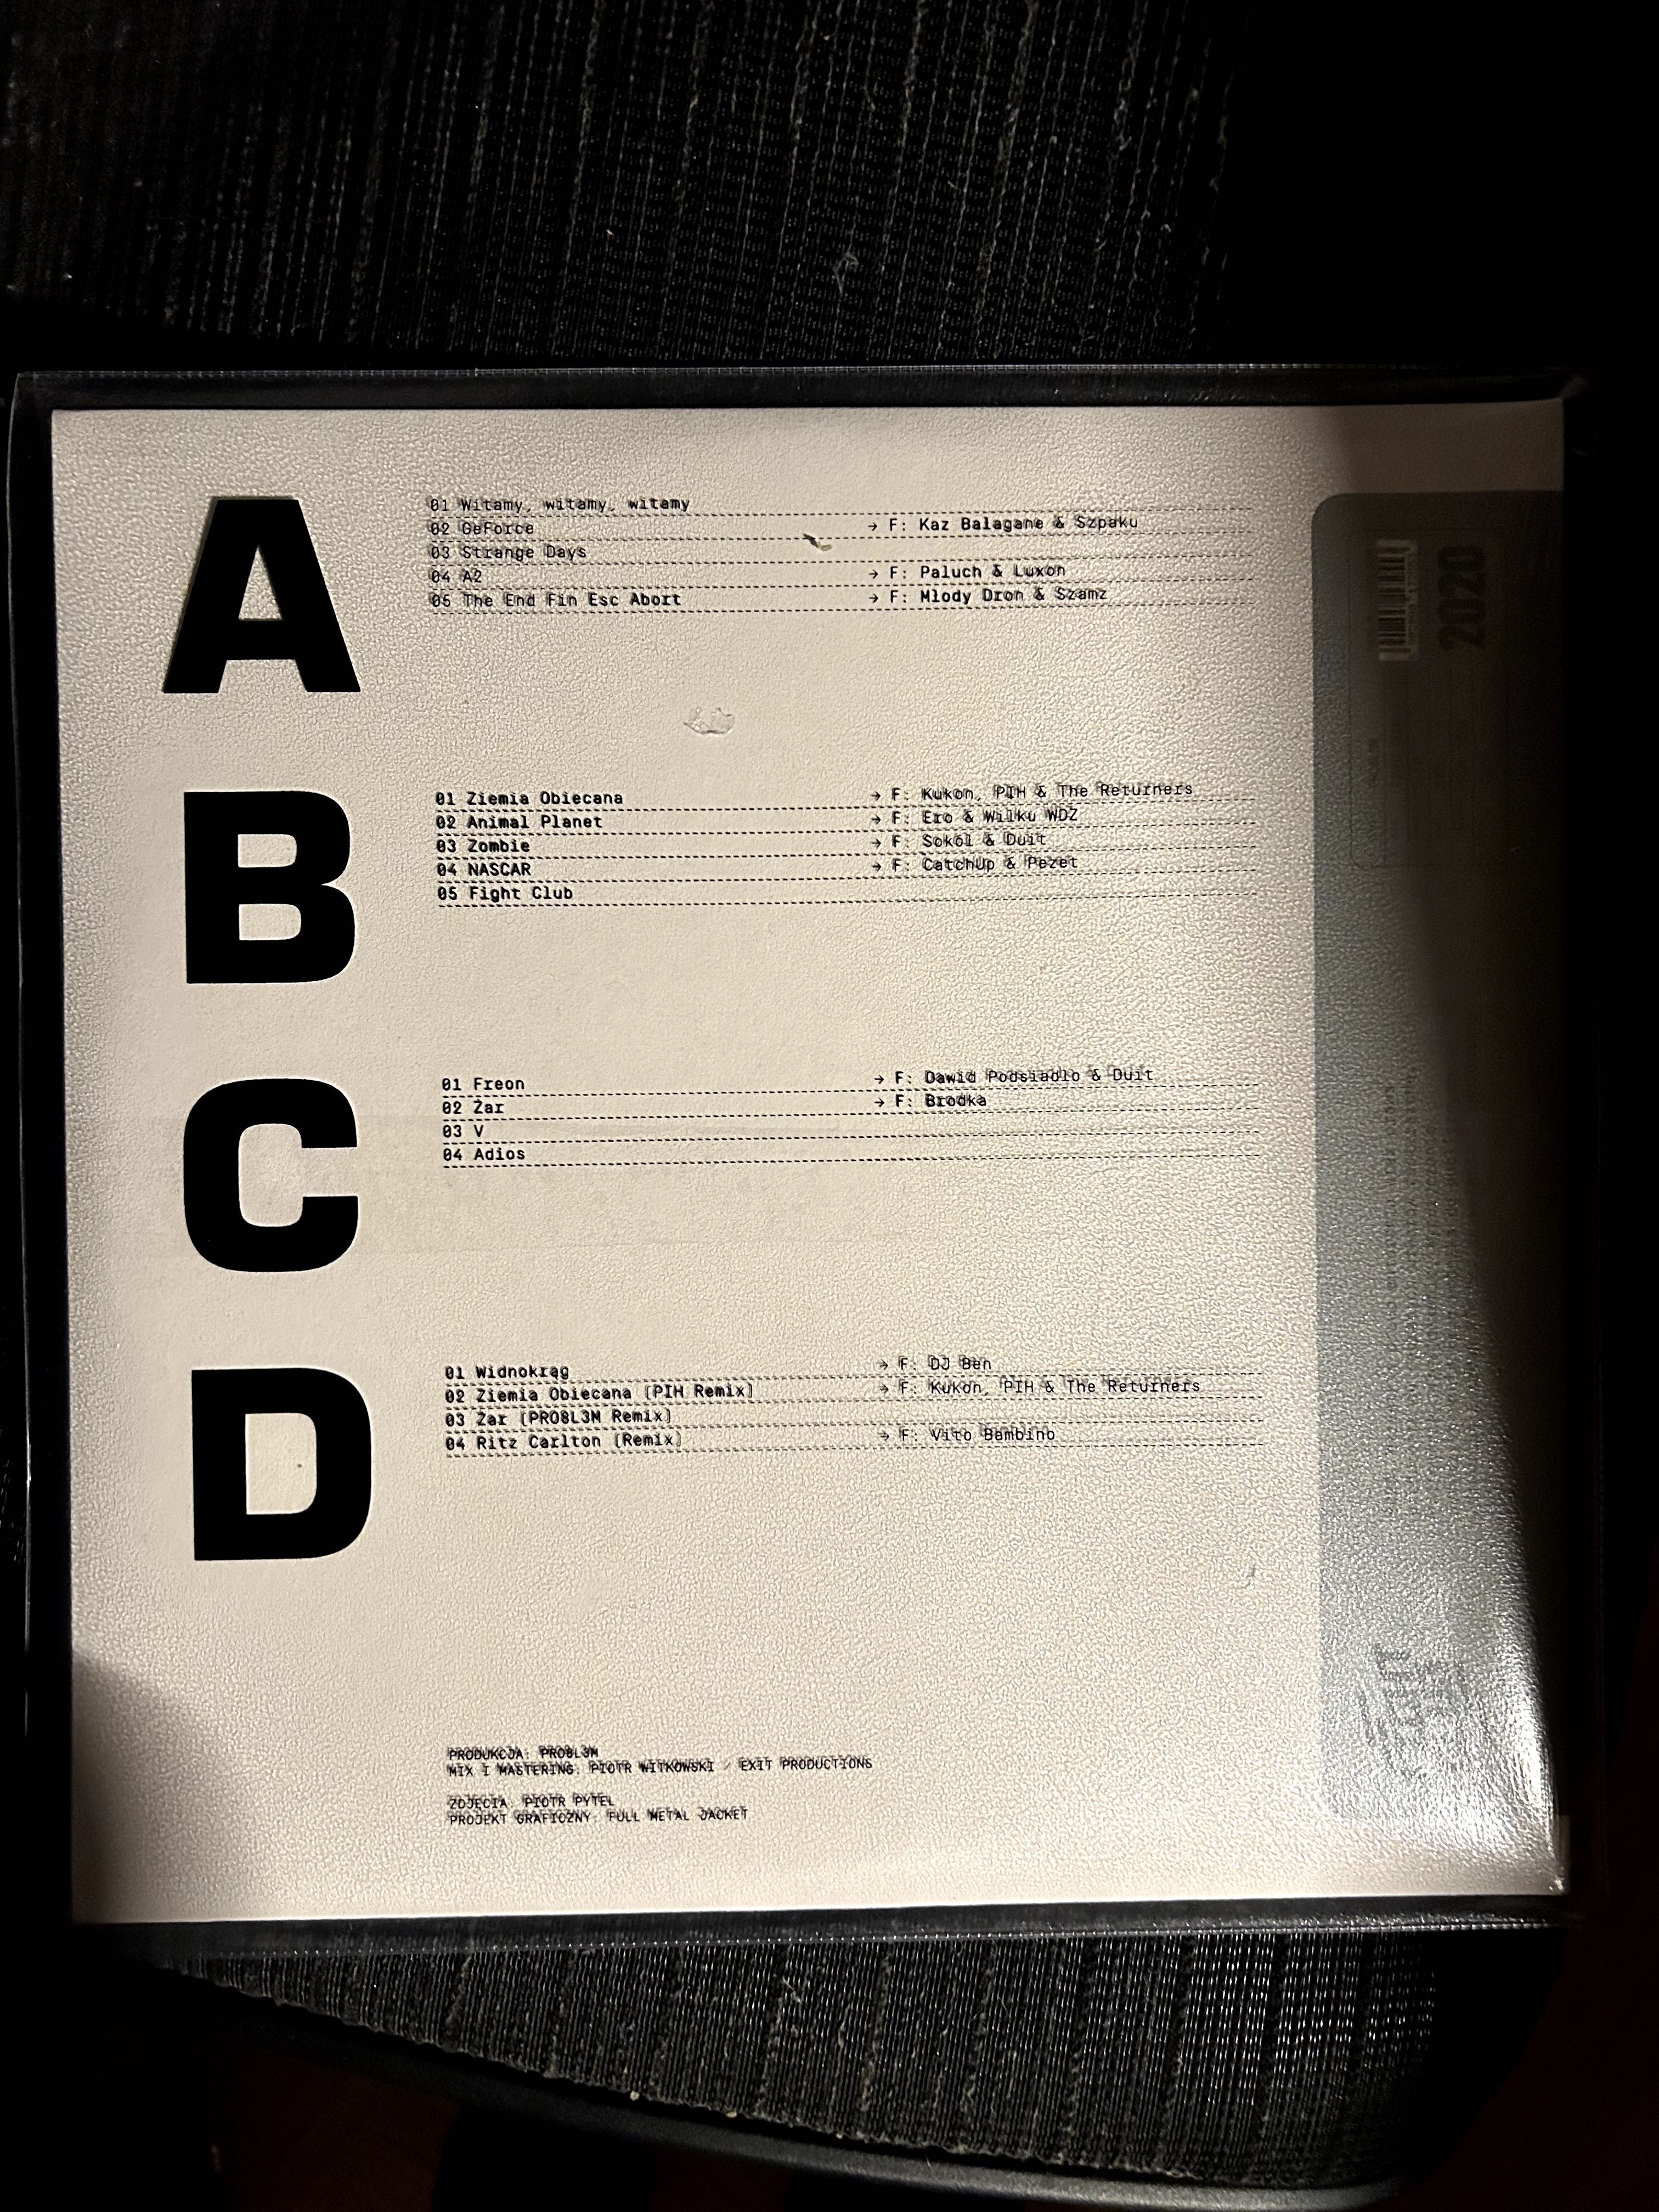 Pro8l3m - Fight Club oryginalny sleeve vinyl nowy folia